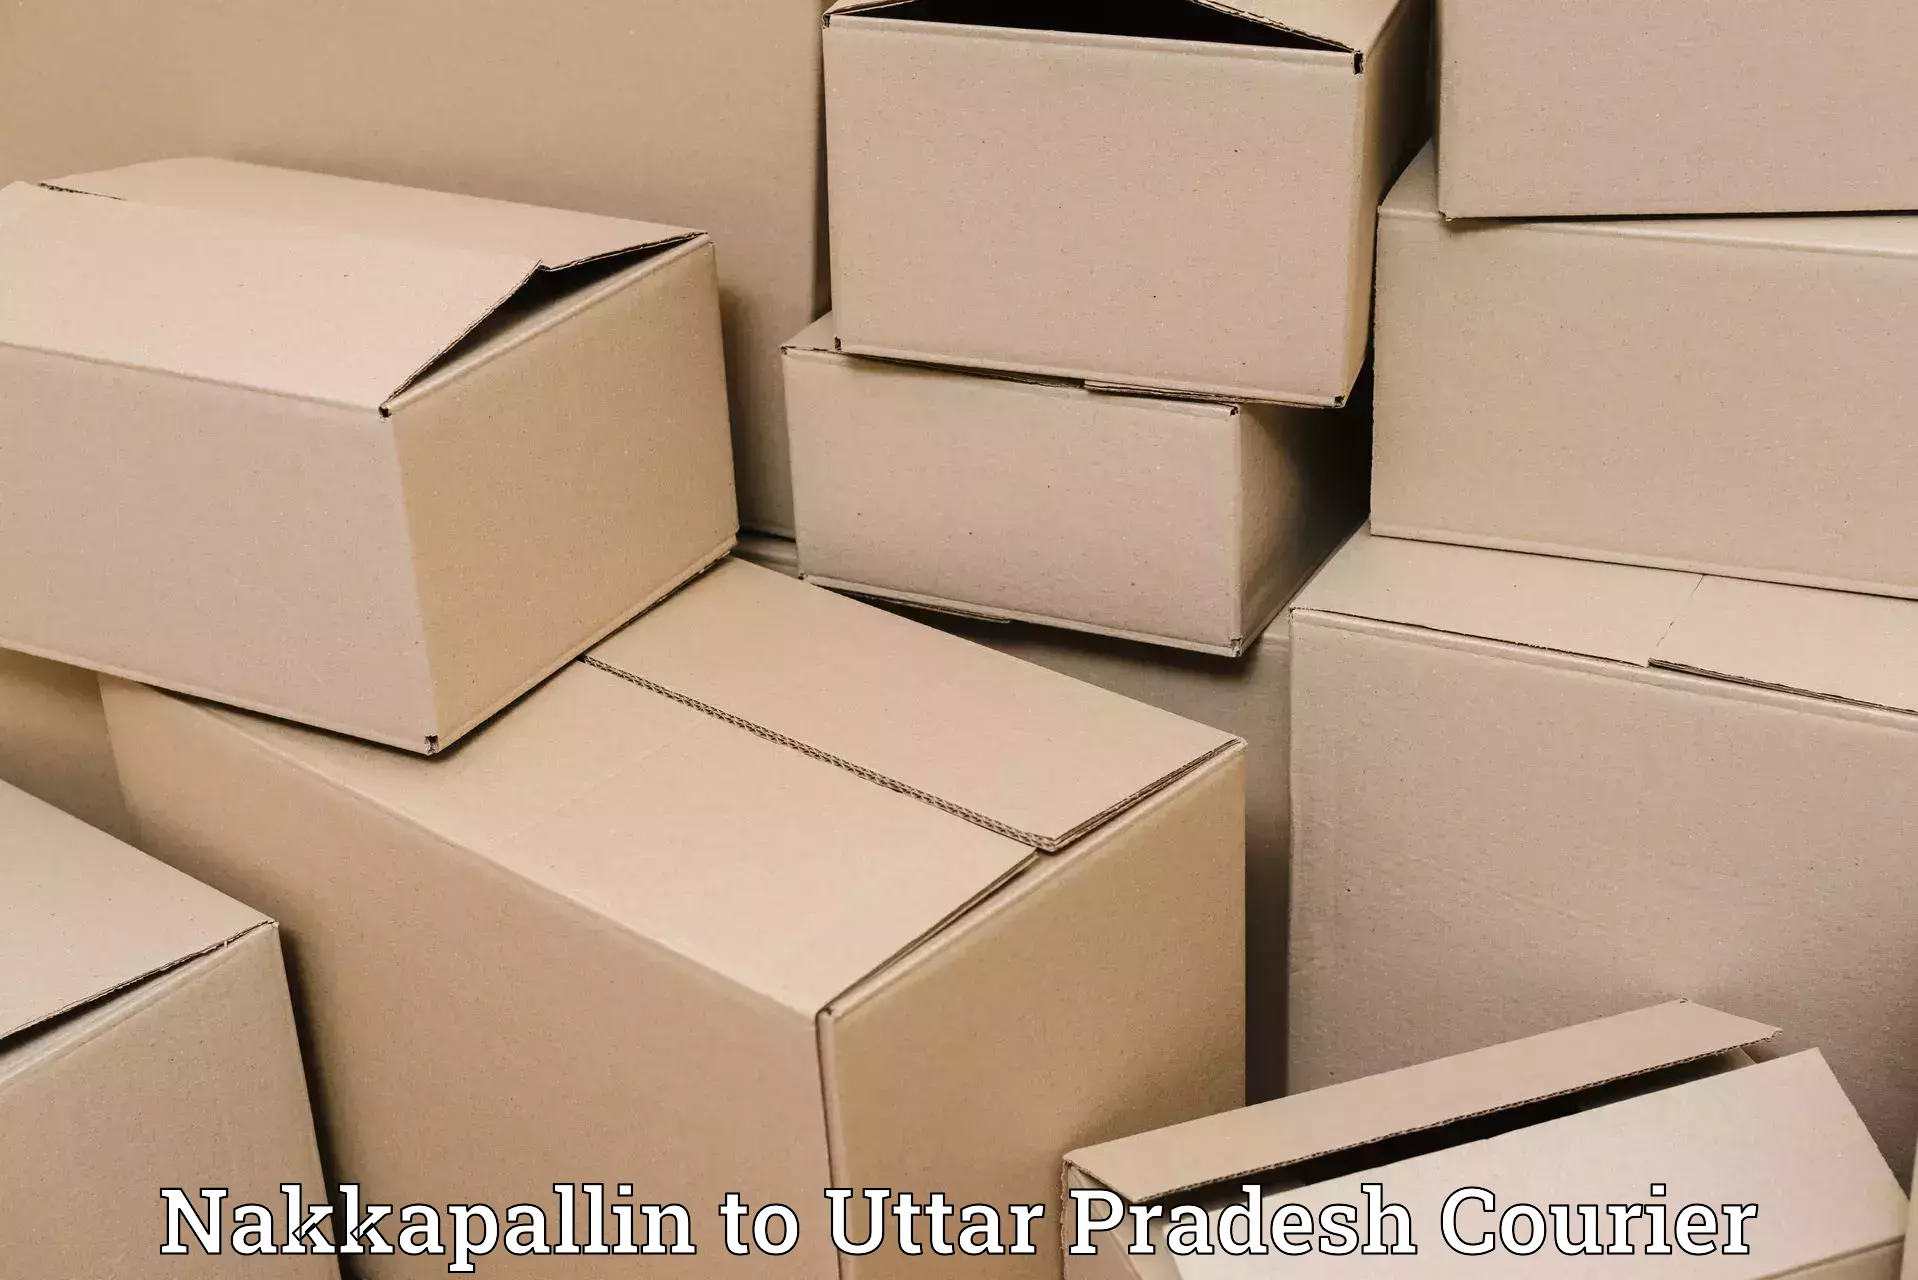 Door-to-door shipping in Nakkapallin to Sahatwar